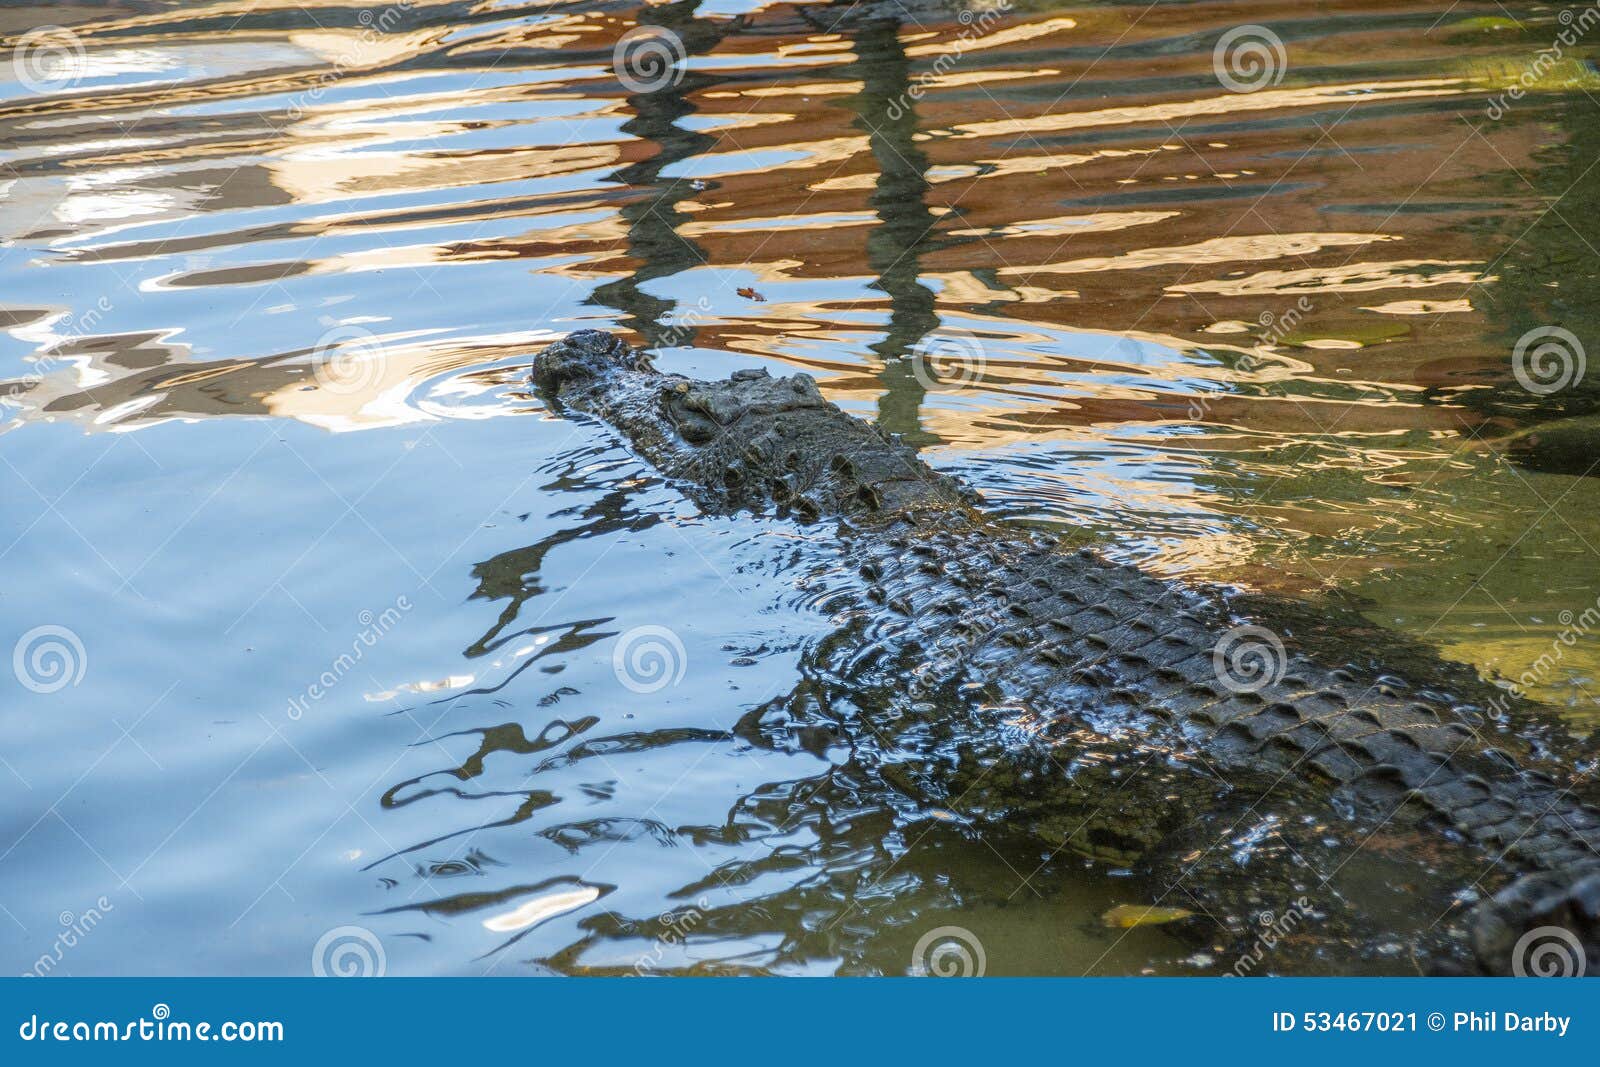 Alligator in water. Alligator in Fuengirola dierlijk park